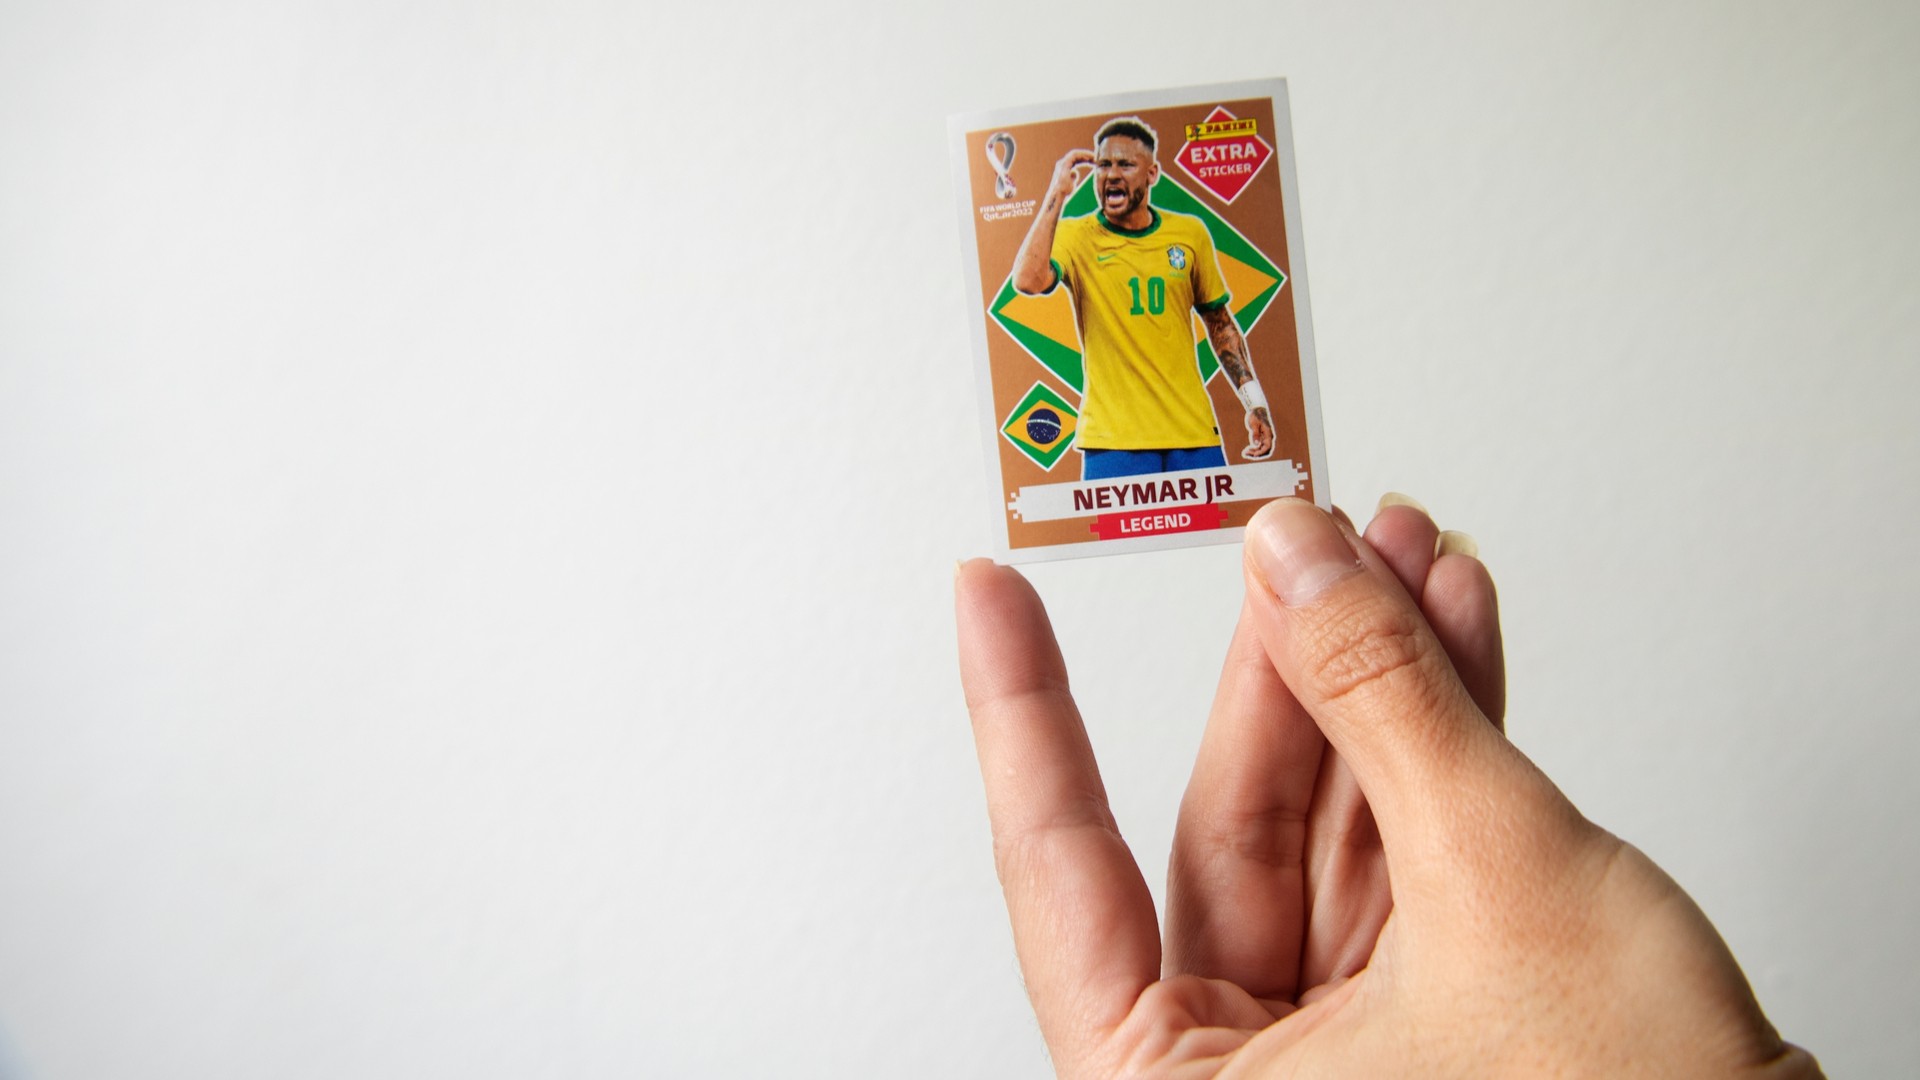 Colecionador recusa proposta de R$ 3 mil por figurinha rara de Neymar